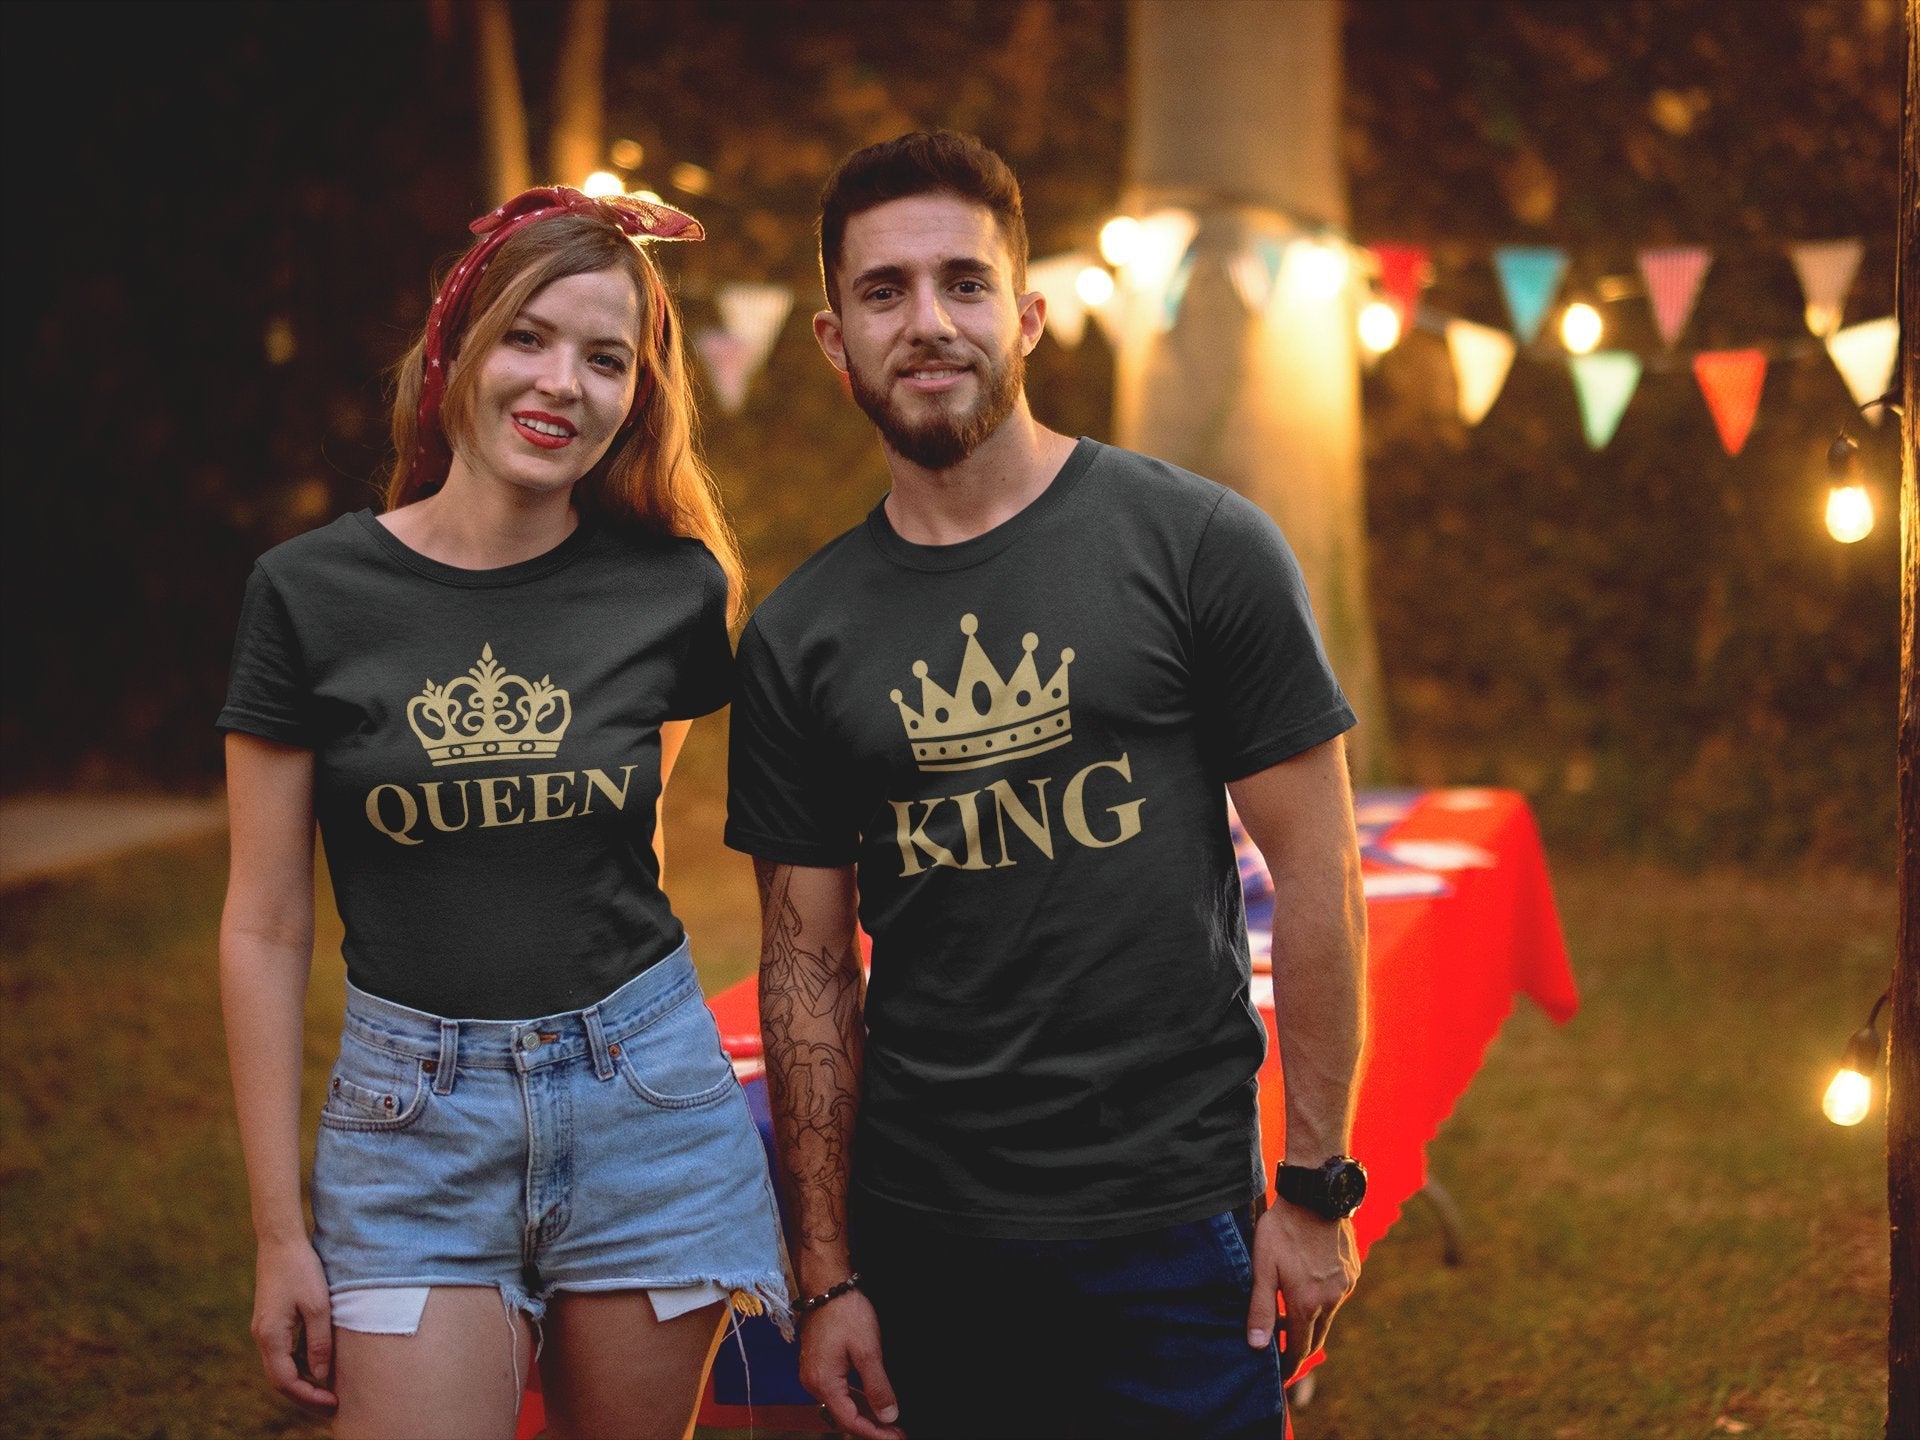 Тениски за Влюбени - King Queen